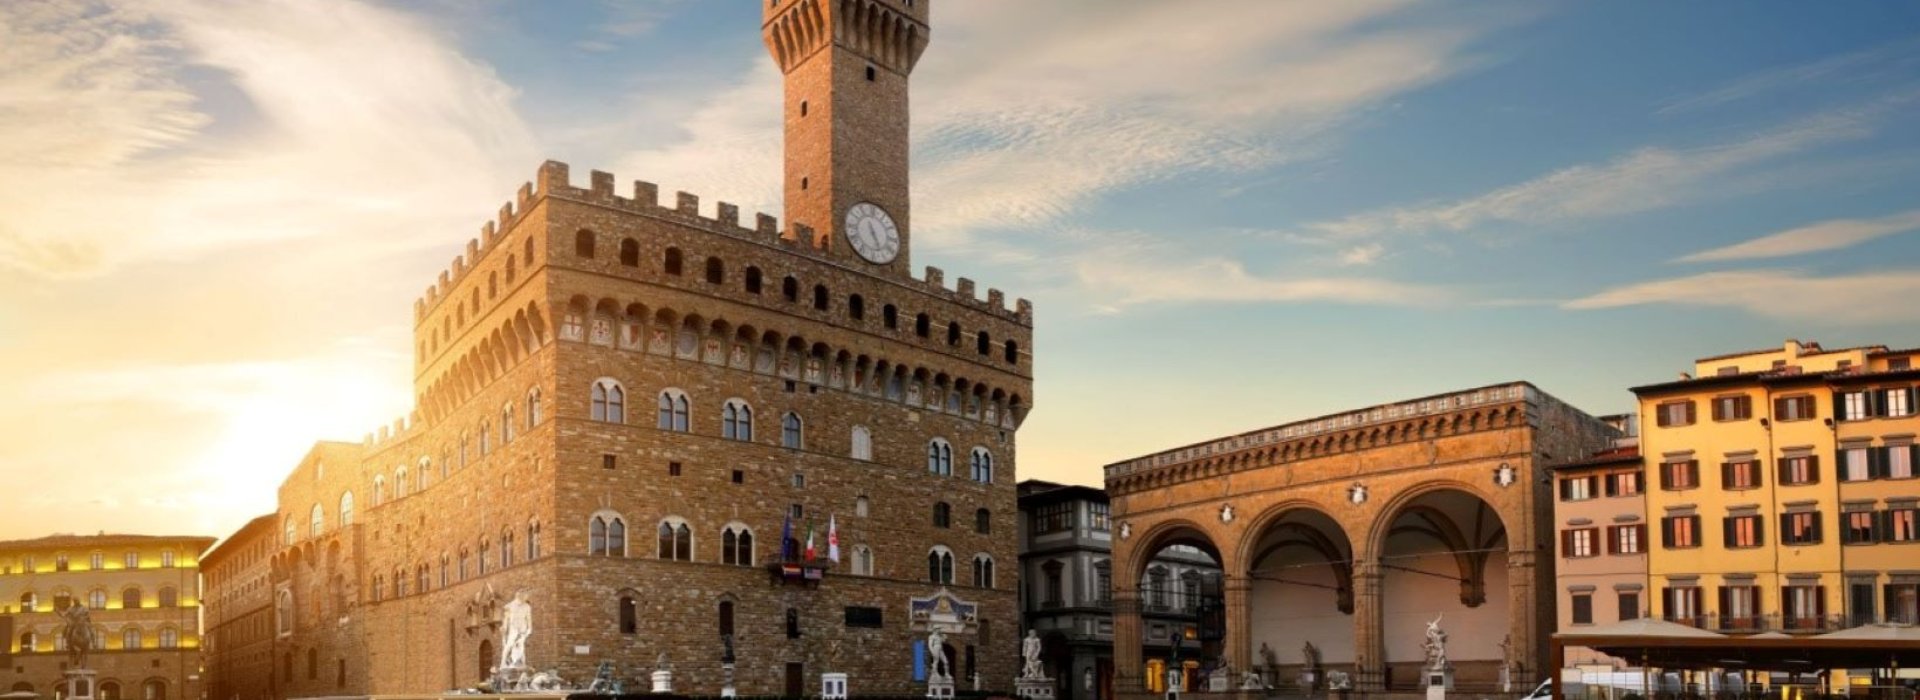 Un tour di Firenze pensato per farvi conoscere dettagli e aspetti insoliti della città